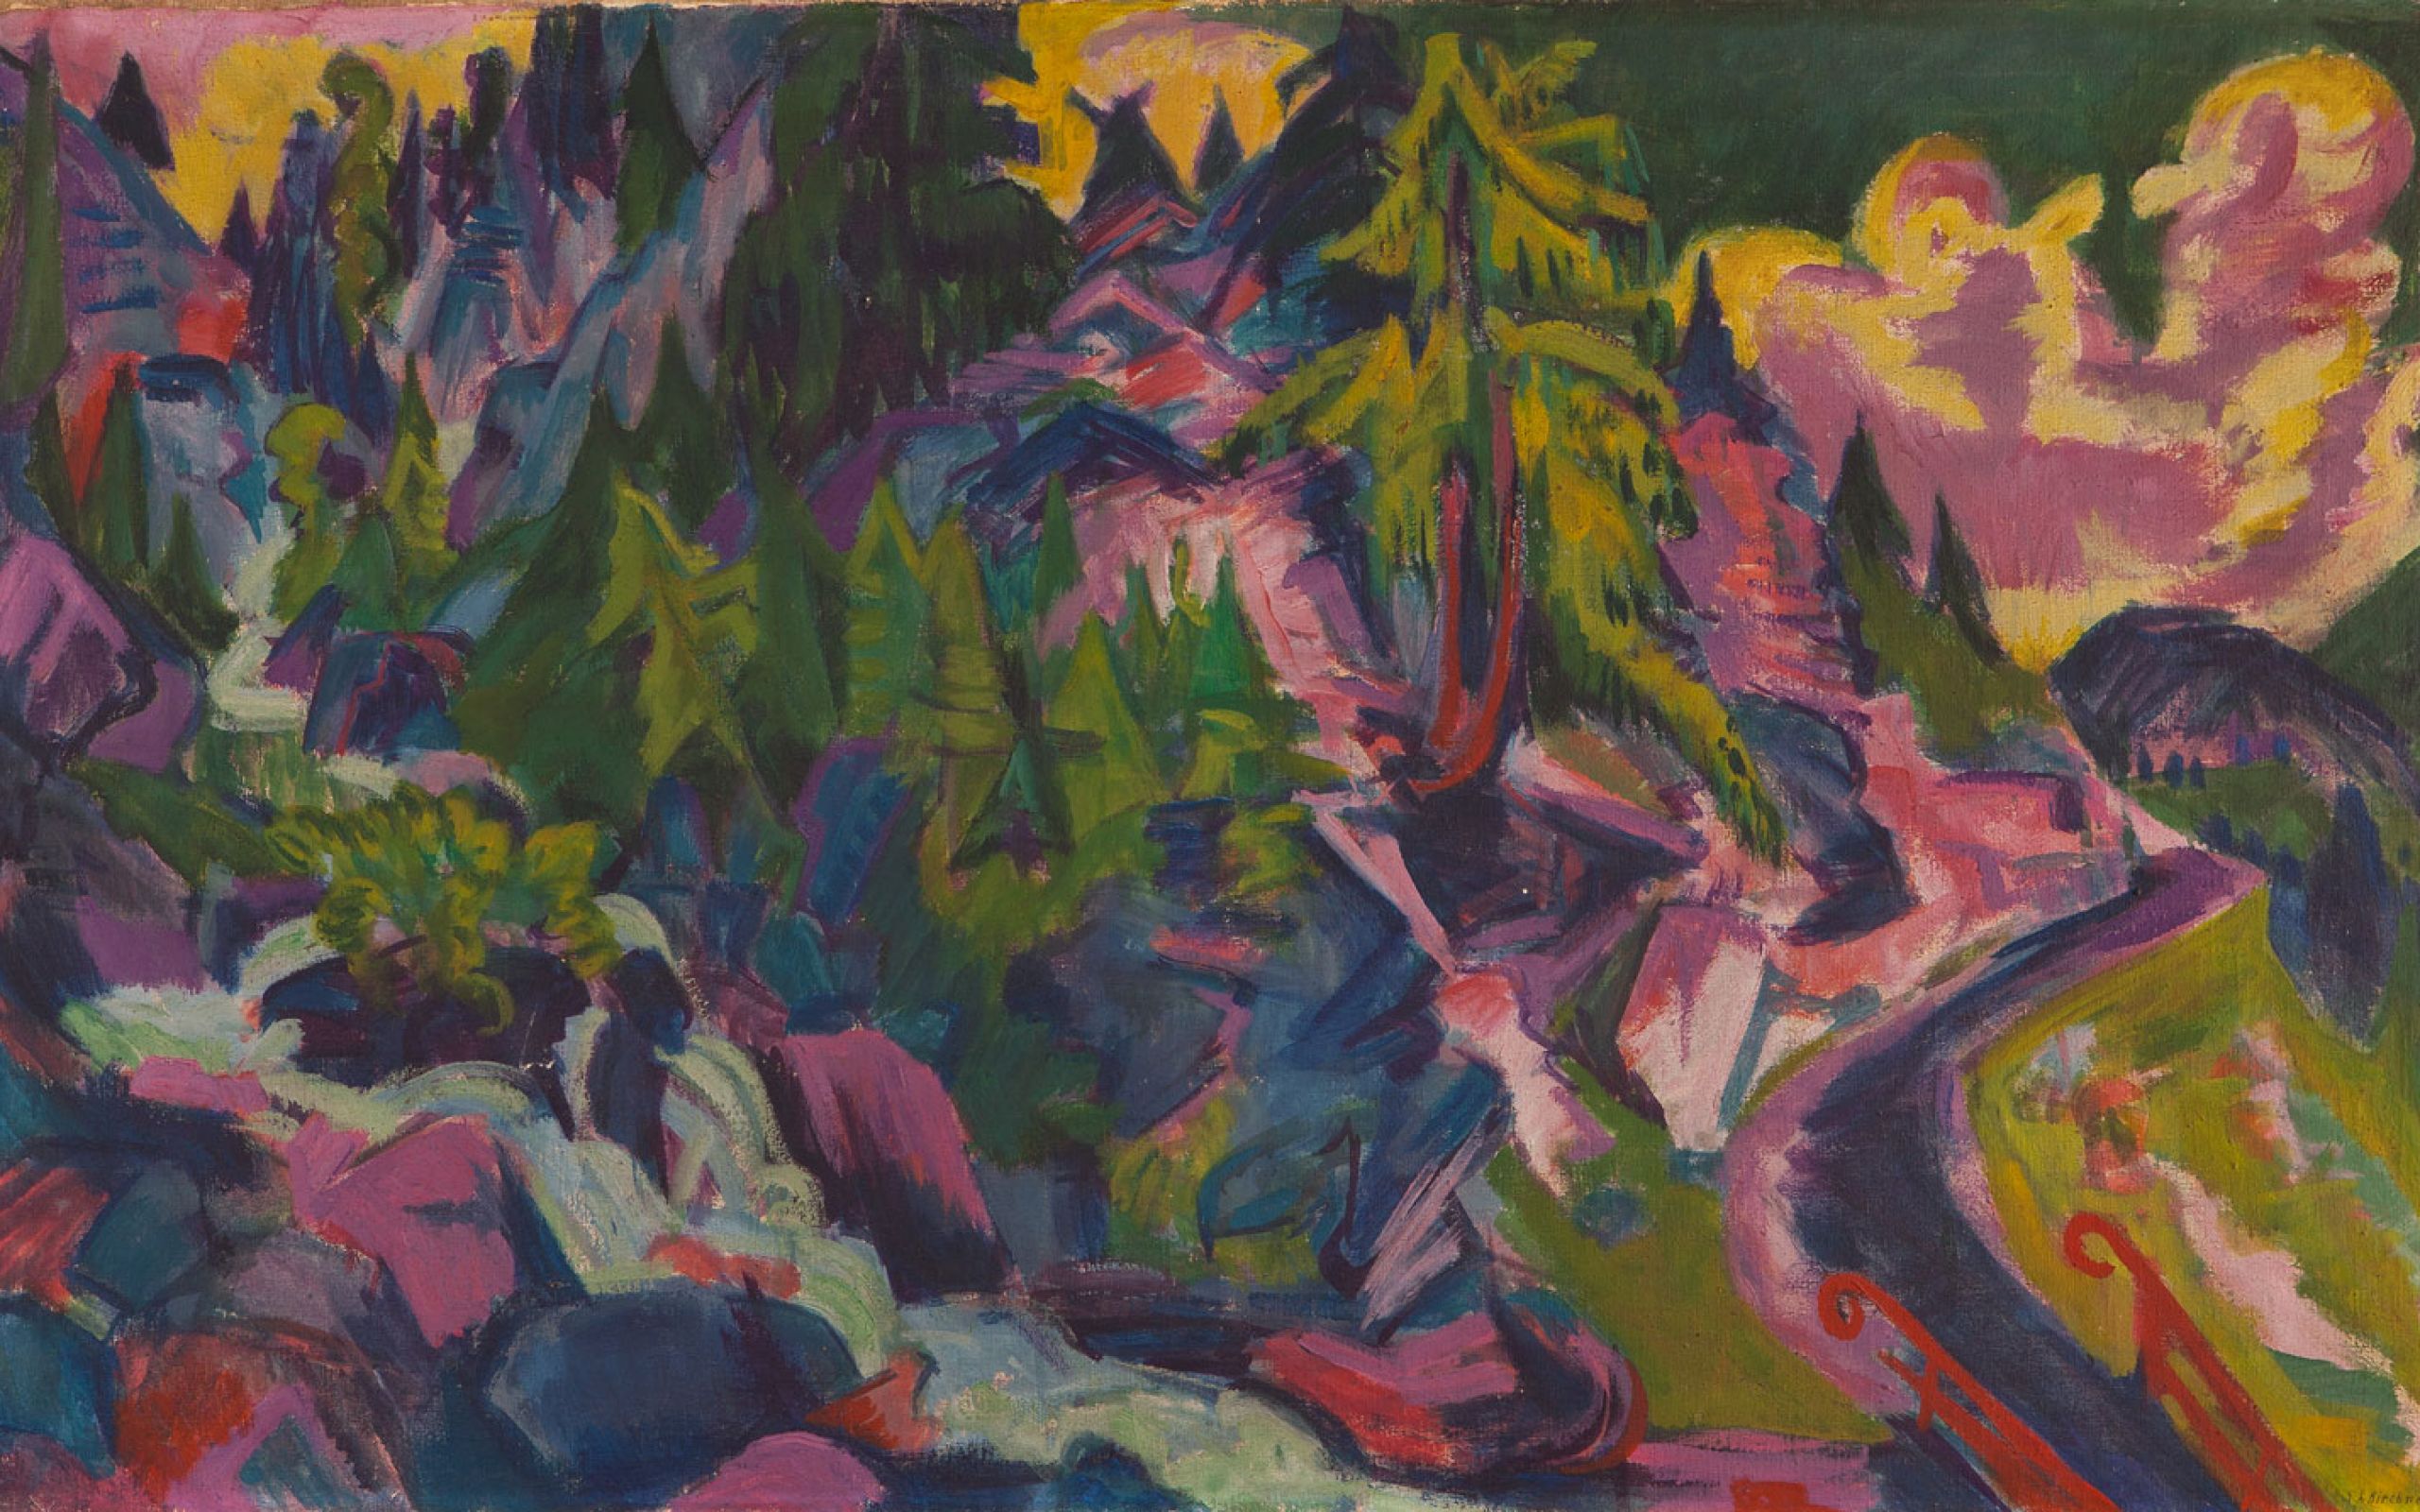 Zu sehen ist das Gemälde "Bergbach". Das querformatige Werk zeigt eine Berglandschaft mit grünen Nadelbäumen, Grasflächen und Büschen sowie violetten Felsen. Rechts führt ein Steg über den Bergbach. Dieser fließt im Bild von oben links schräg nach rechts 